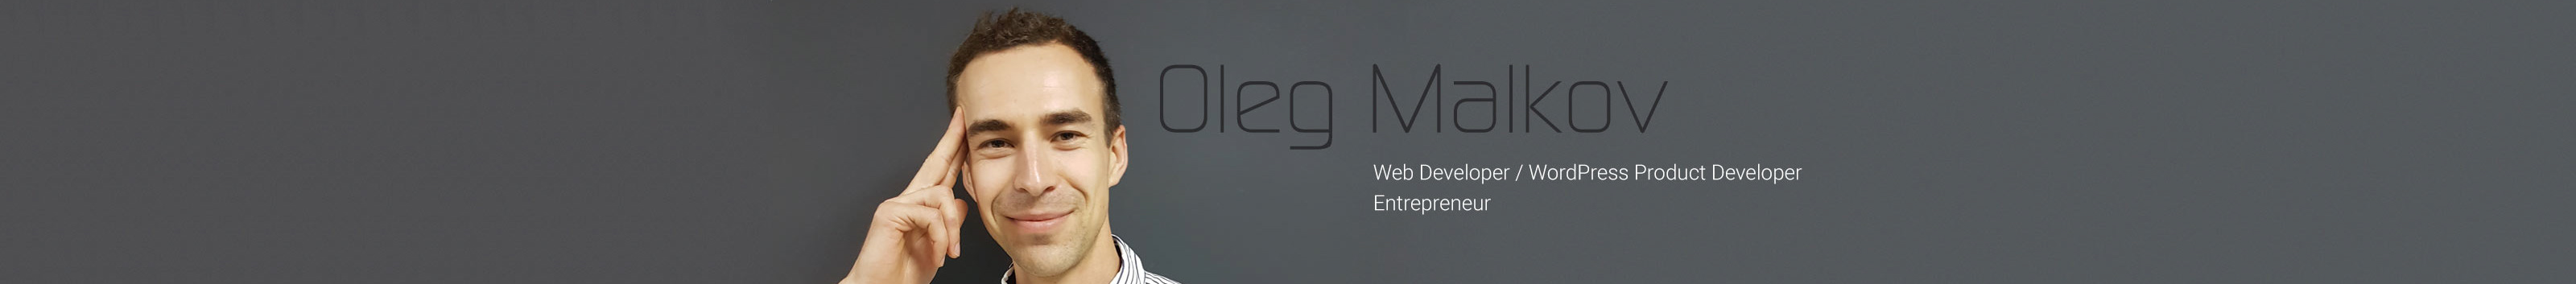 Oleg Malkov's profile banner